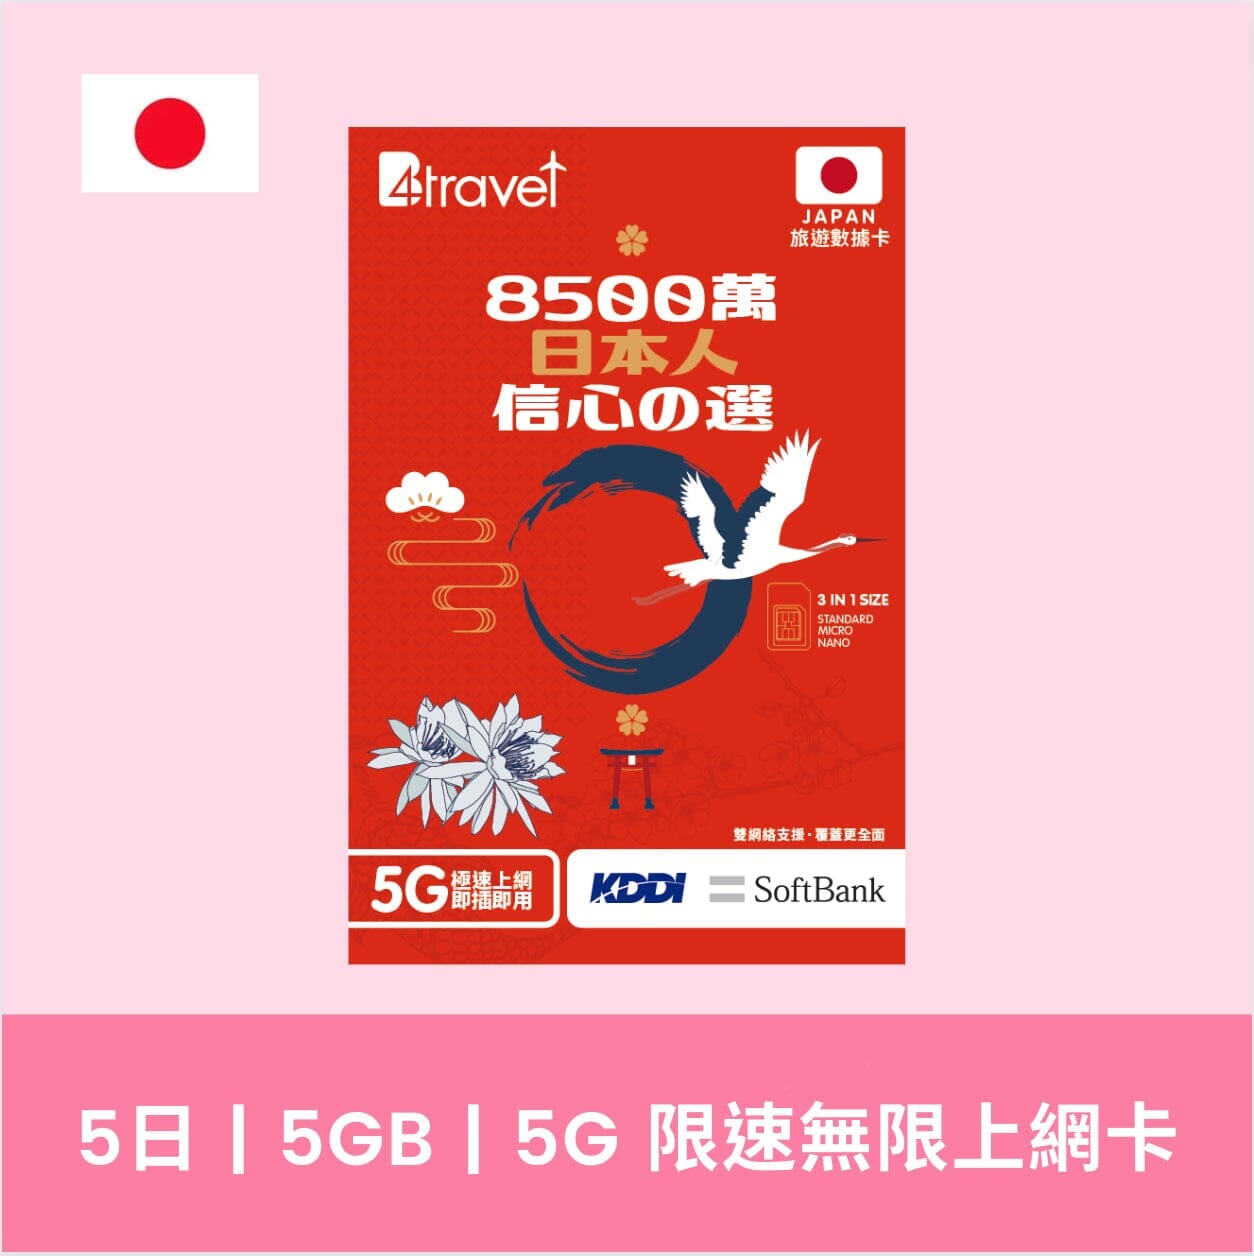 【限時特價】B4travel 日本 5天 5G SIM 卡 + Torriibolt 旅行充電器套裝